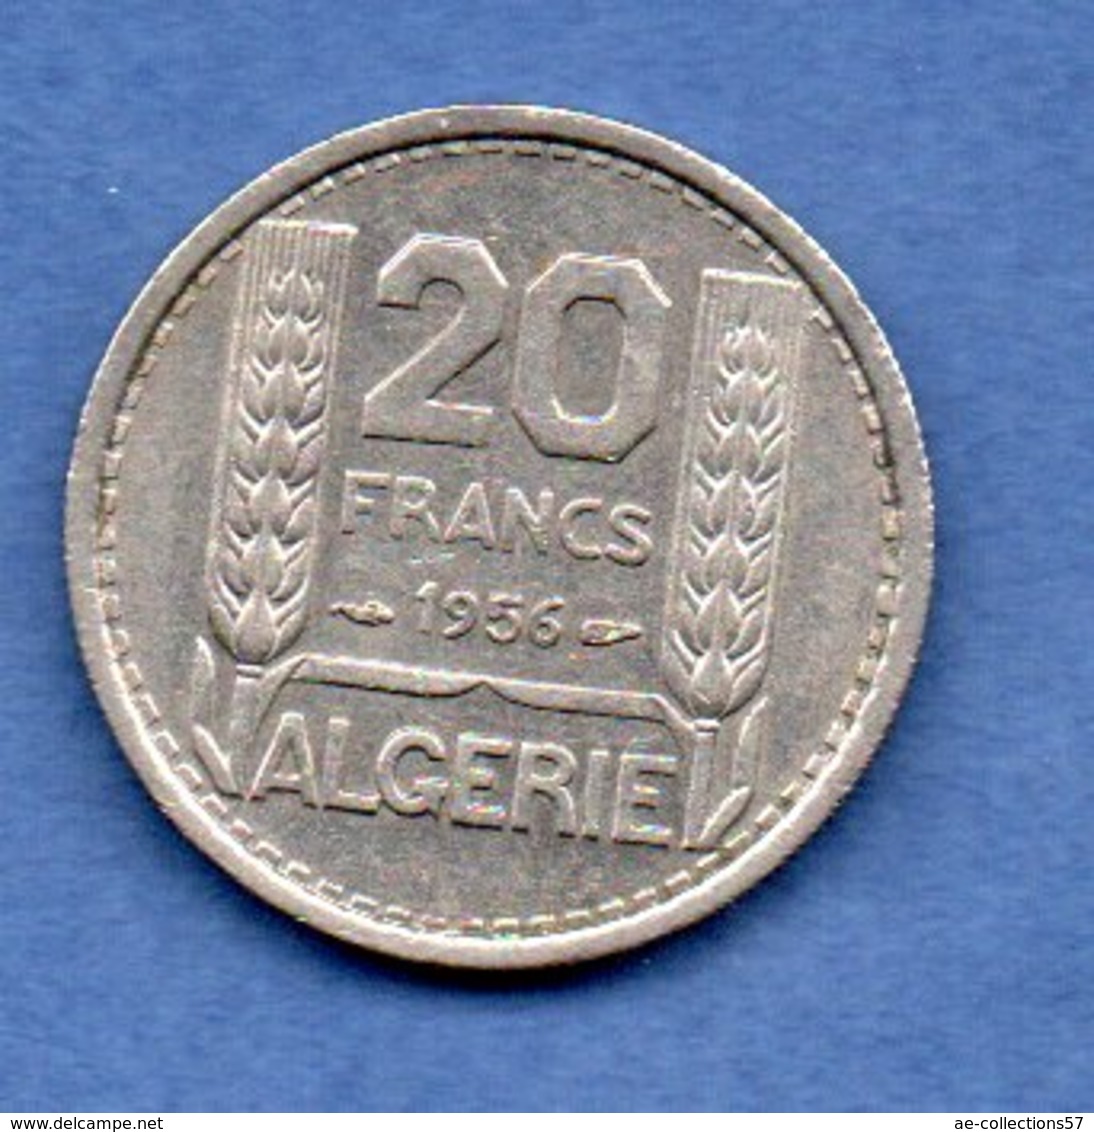 Algérie - 20  Francs 1956 -  Km # 91 -  état  SUP - Algérie